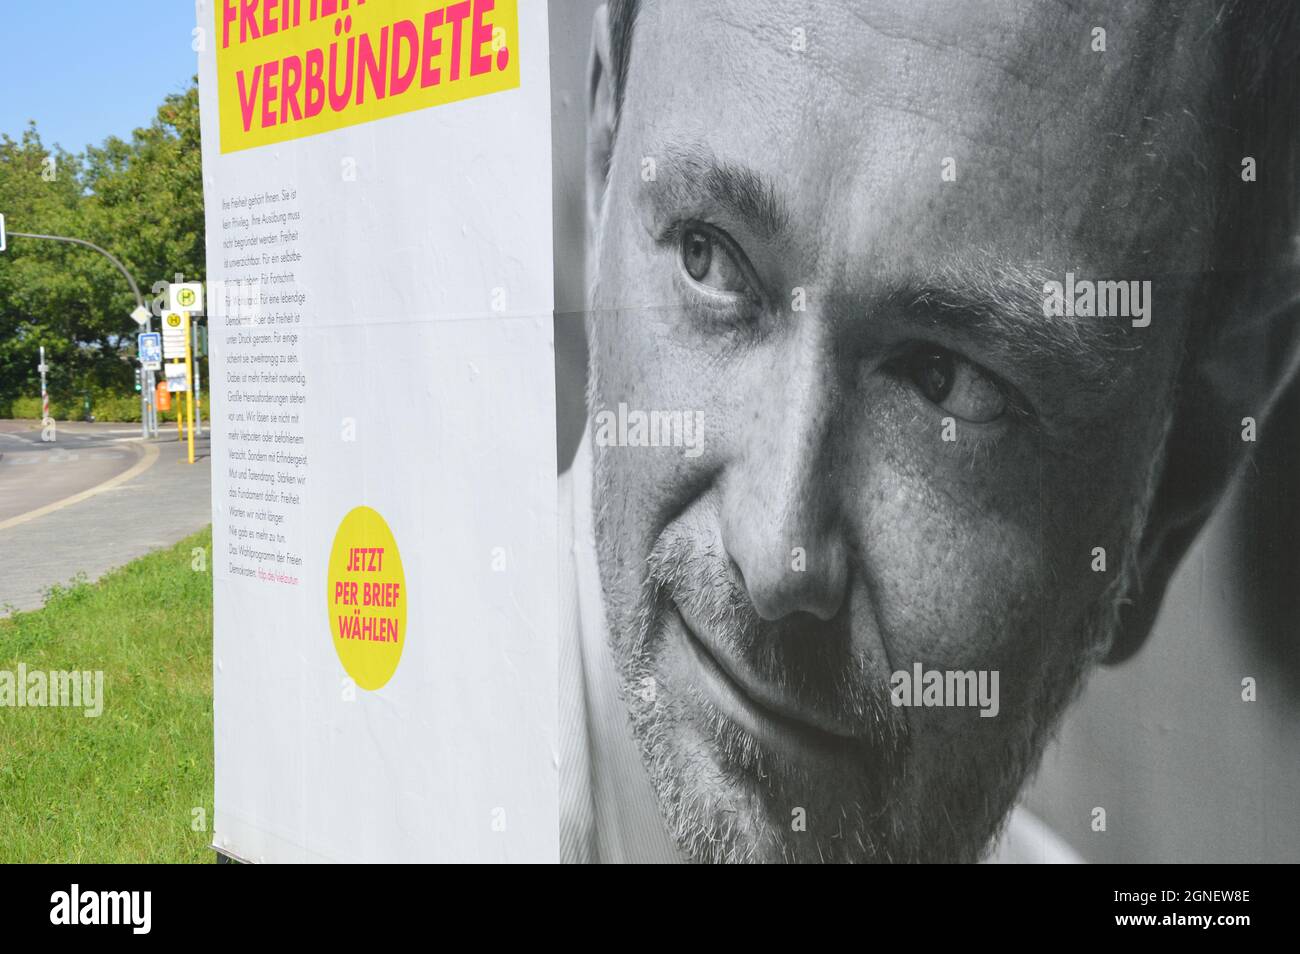 Bannière de campagne de Christian Lindner (Parti démocratique libre) à Prellerweg à Schoeneberg, Berlin, Allemagne - 8 septembre 2021. Banque D'Images